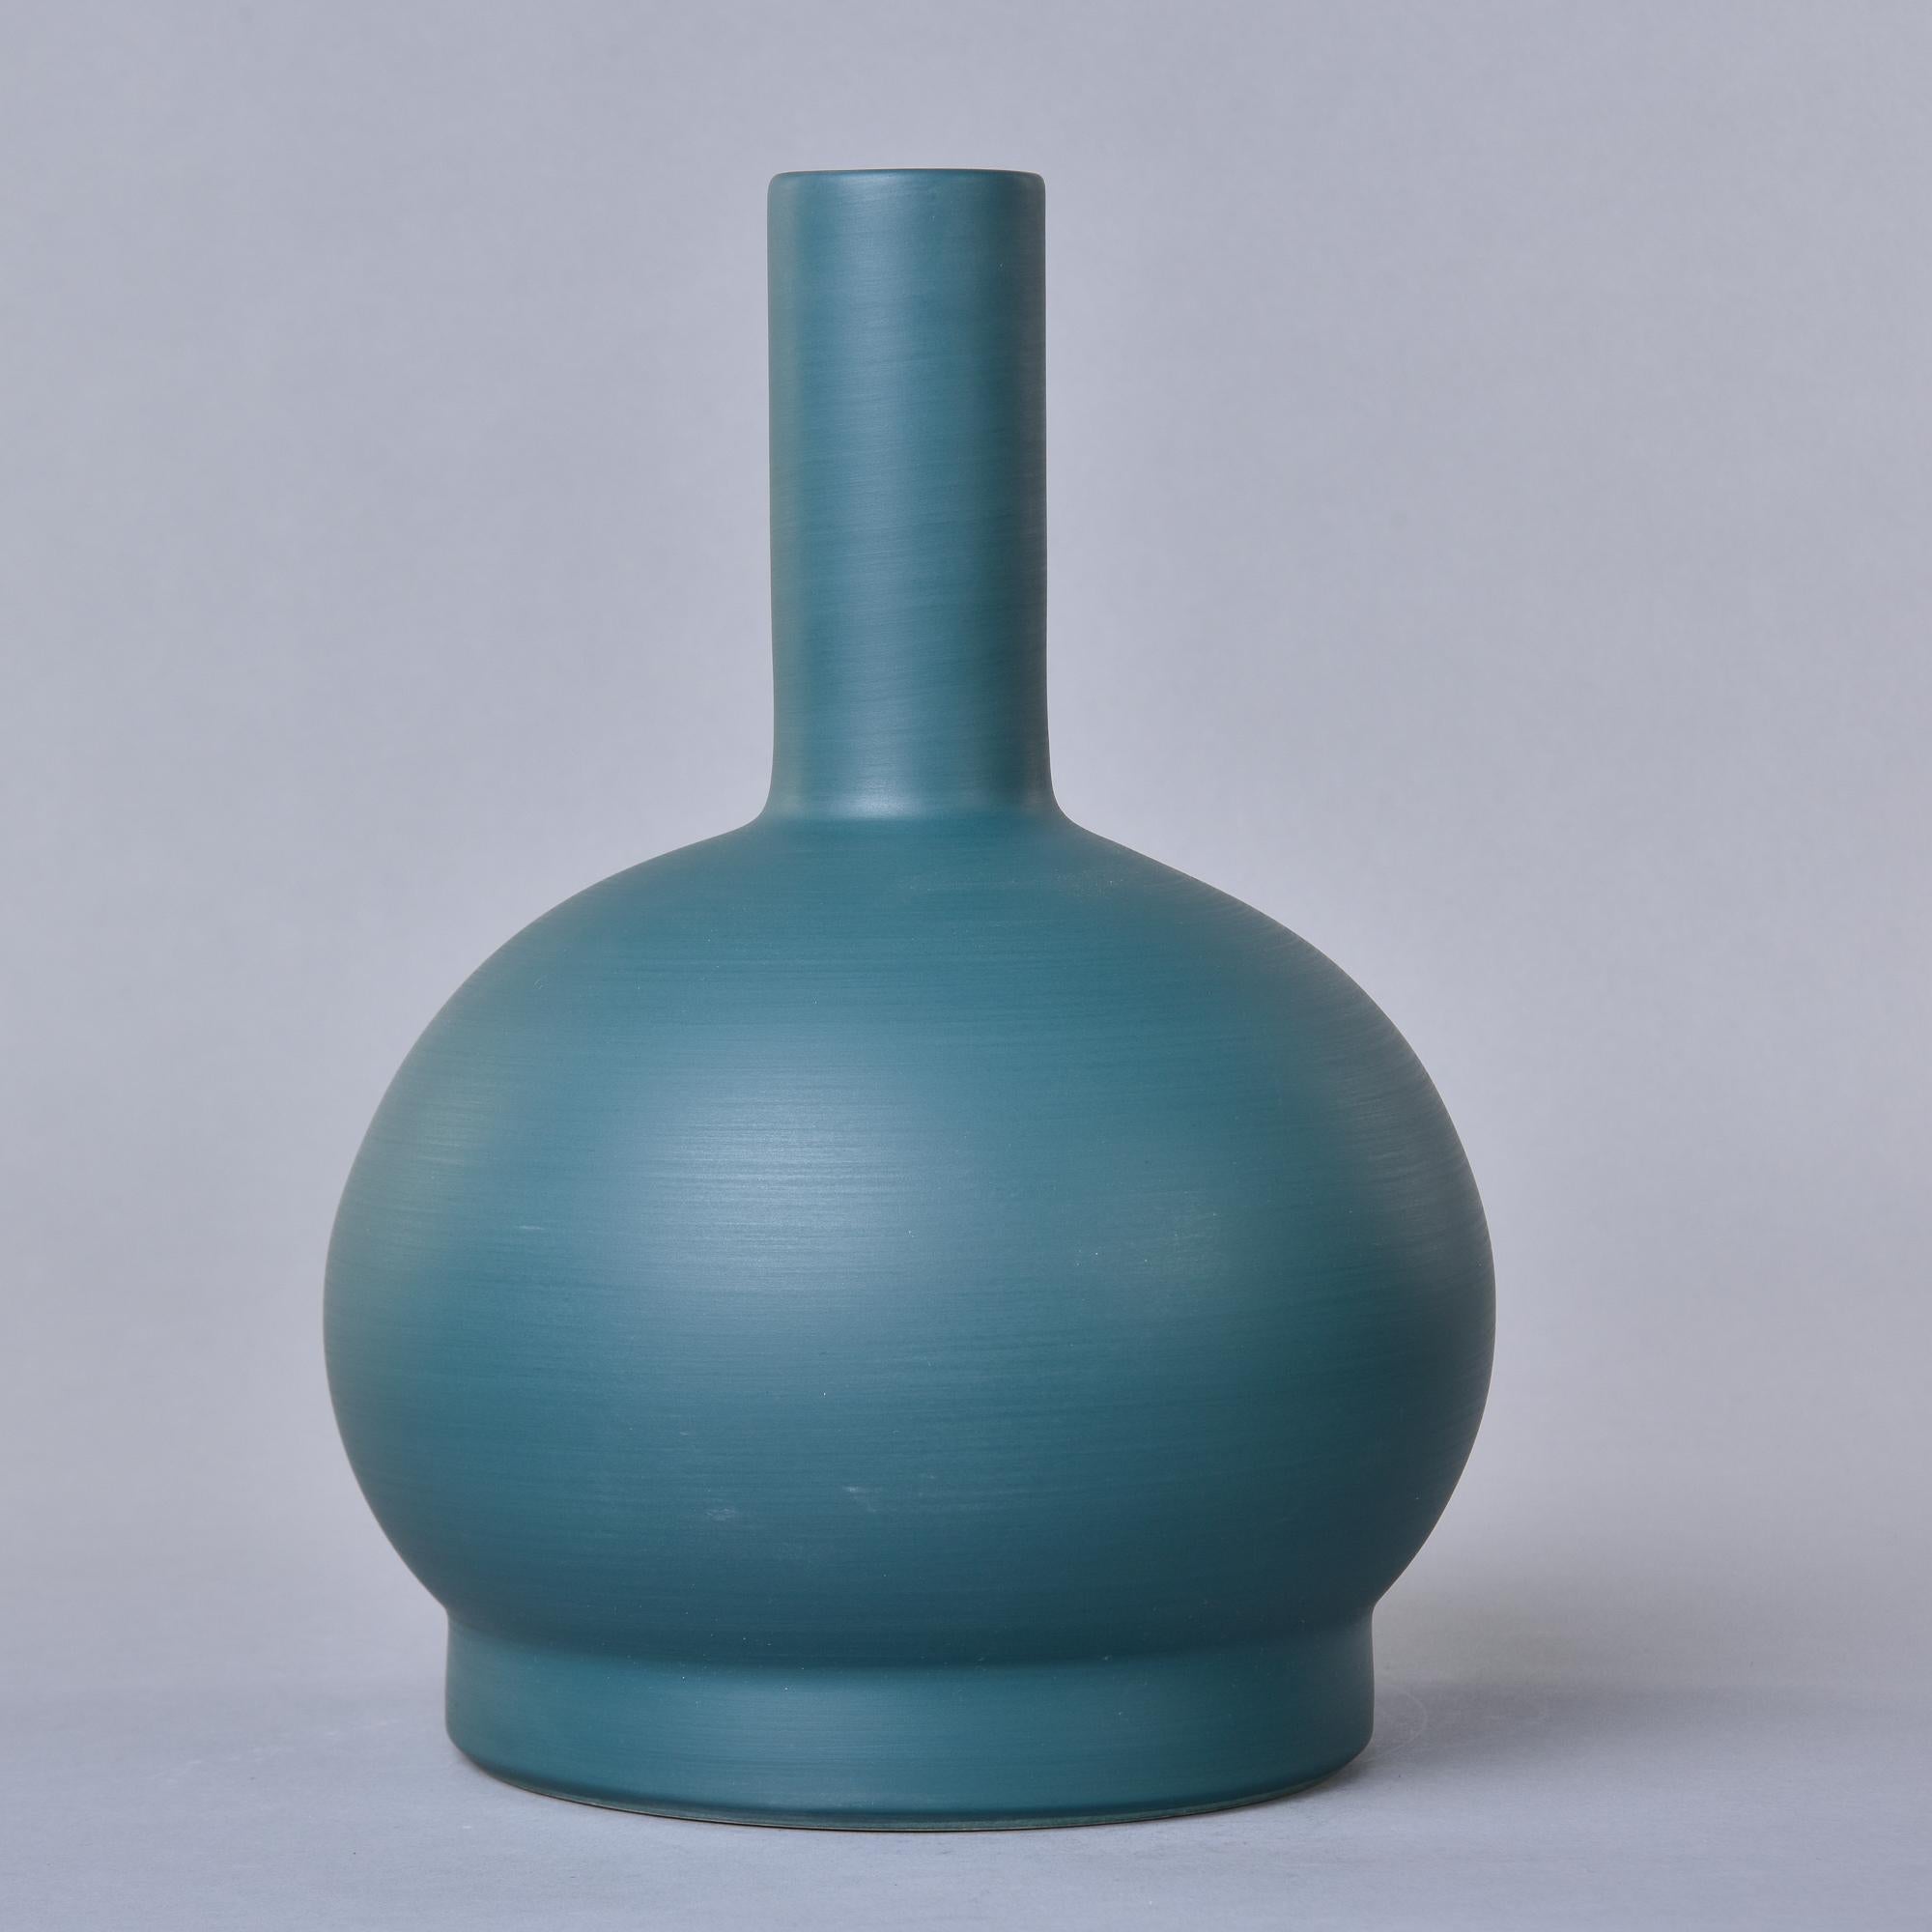 Nouveau et importé d'Italie, ce vase en poterie d'art de Rina Menardi est un récipient à paroi mince aux proportions généreuses. Base ronde en forme de globe avec un col haut et étroit et une glaçure saturée vert sarcelle. Le dessous de la base